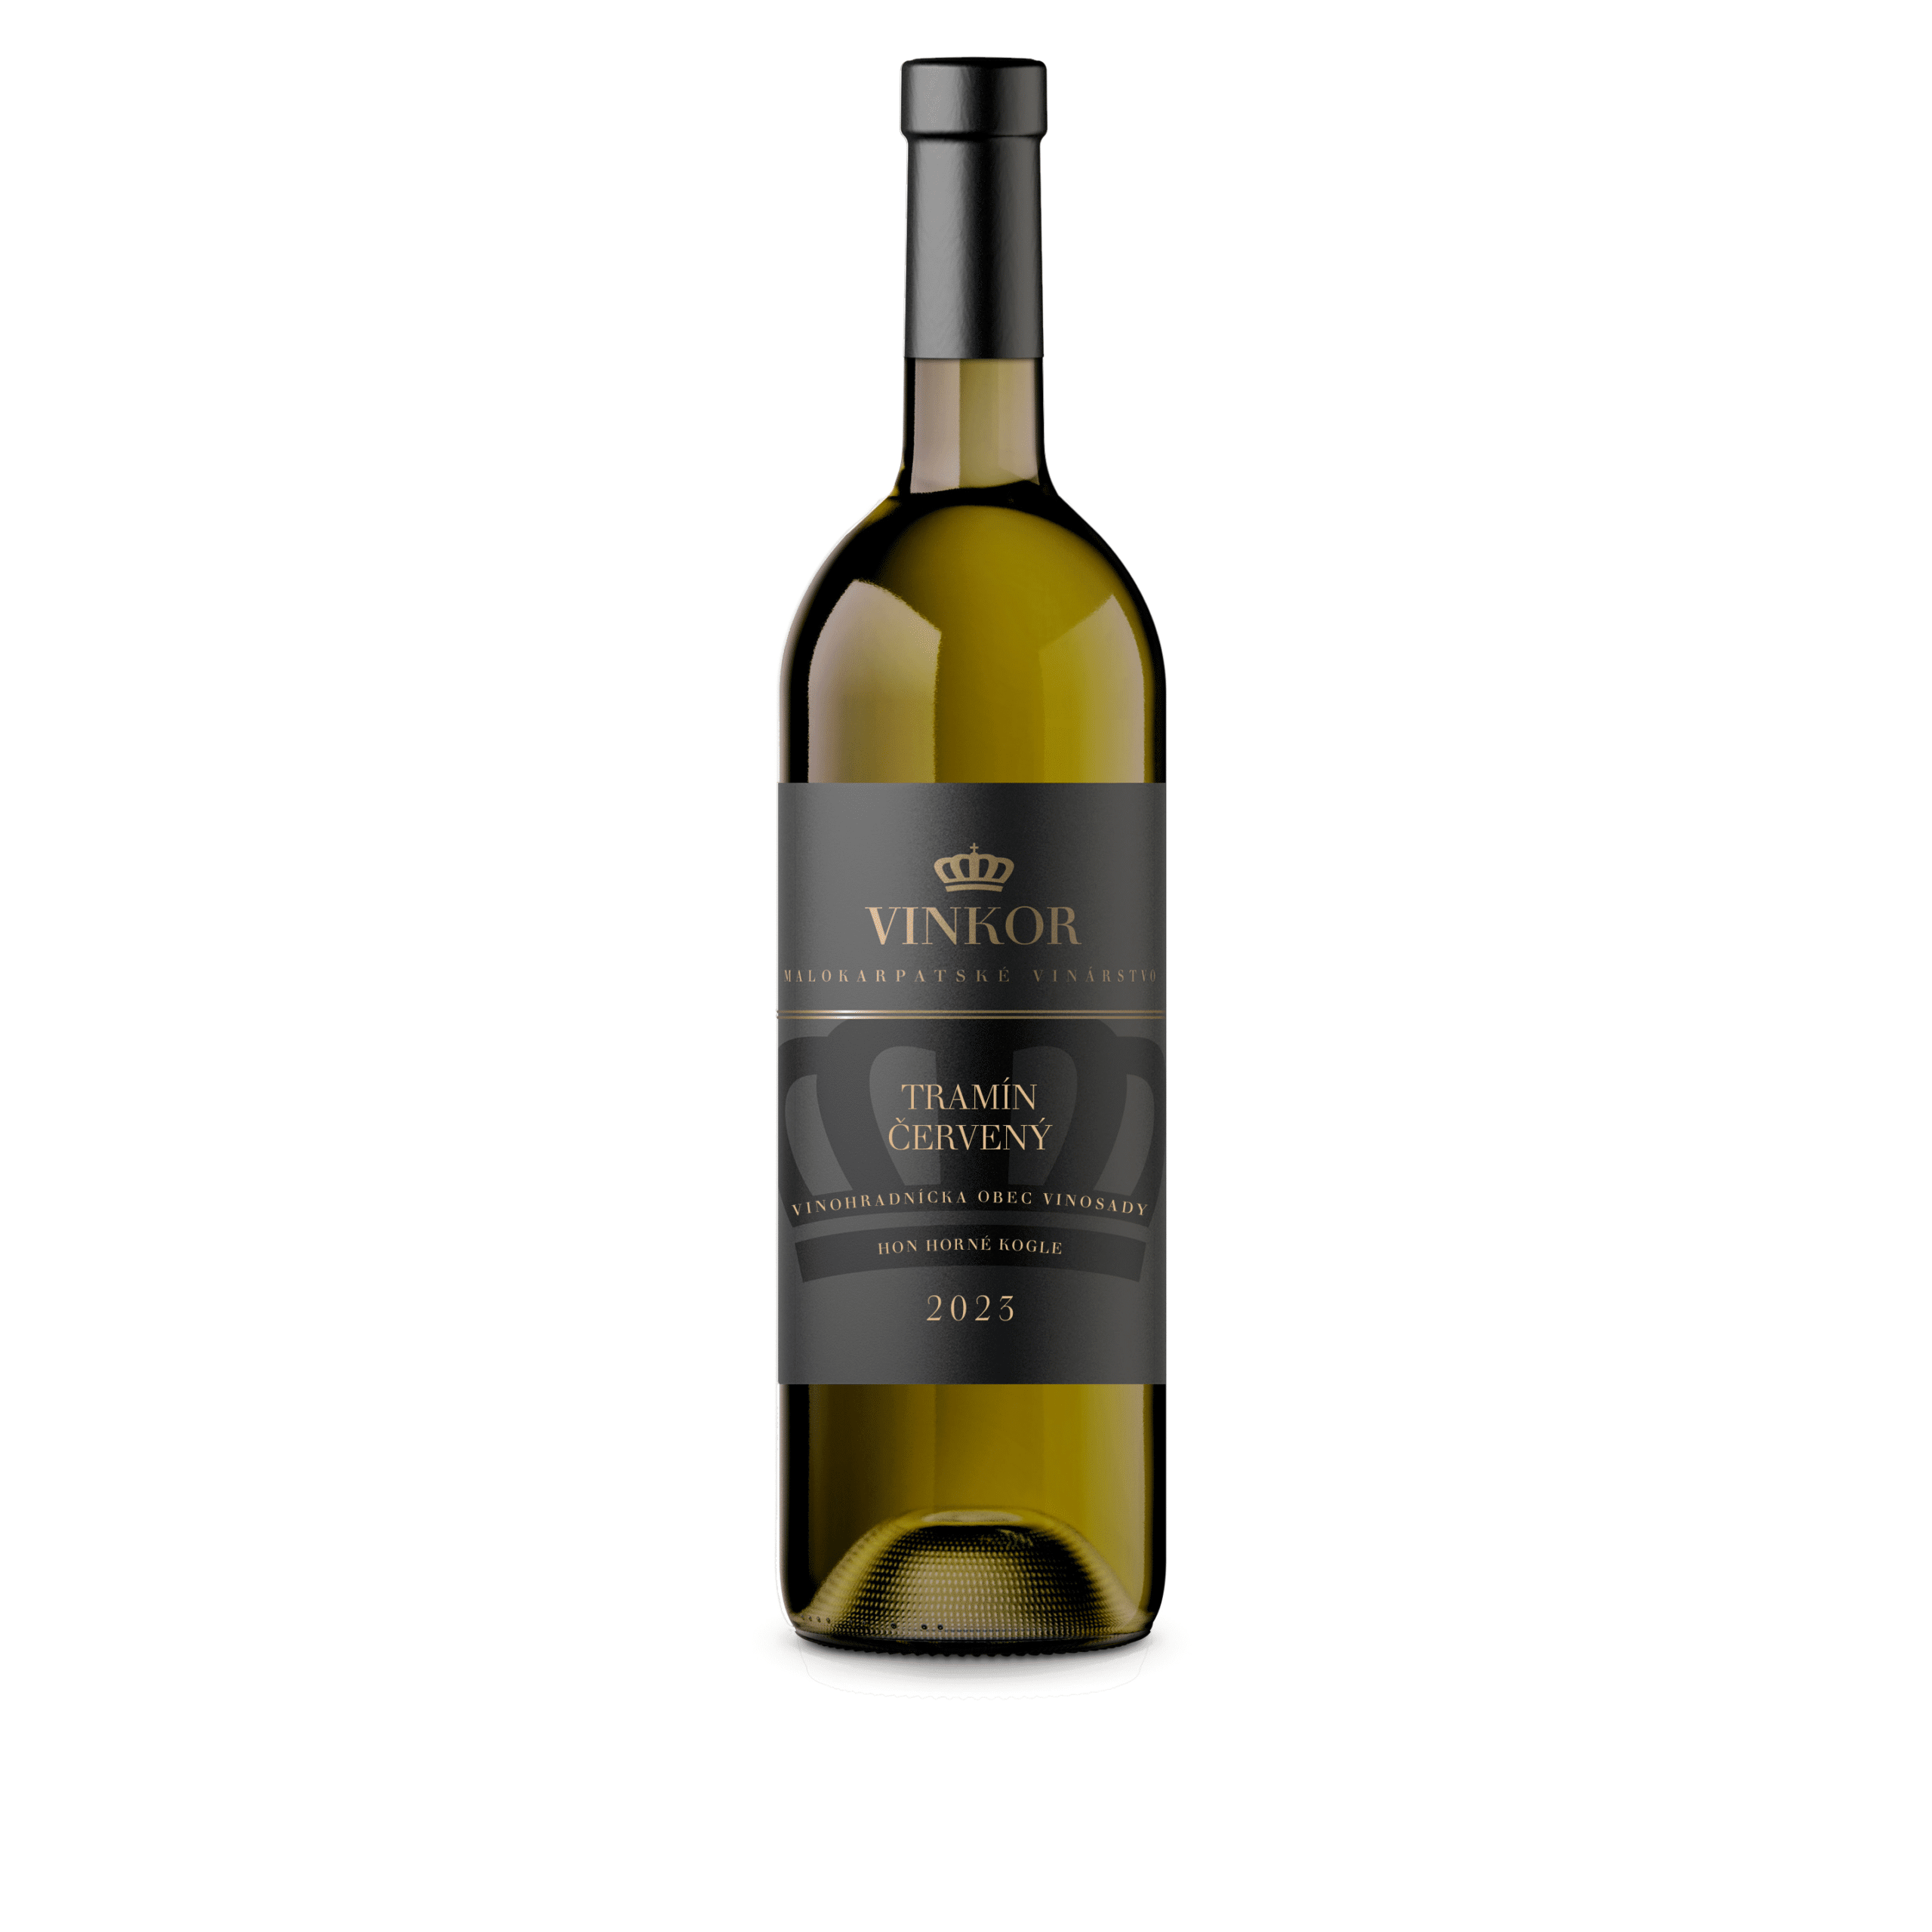 Biele suché víno Tramín červený 2023 z rodinného vinárstva Vinkor z Malých Karpát